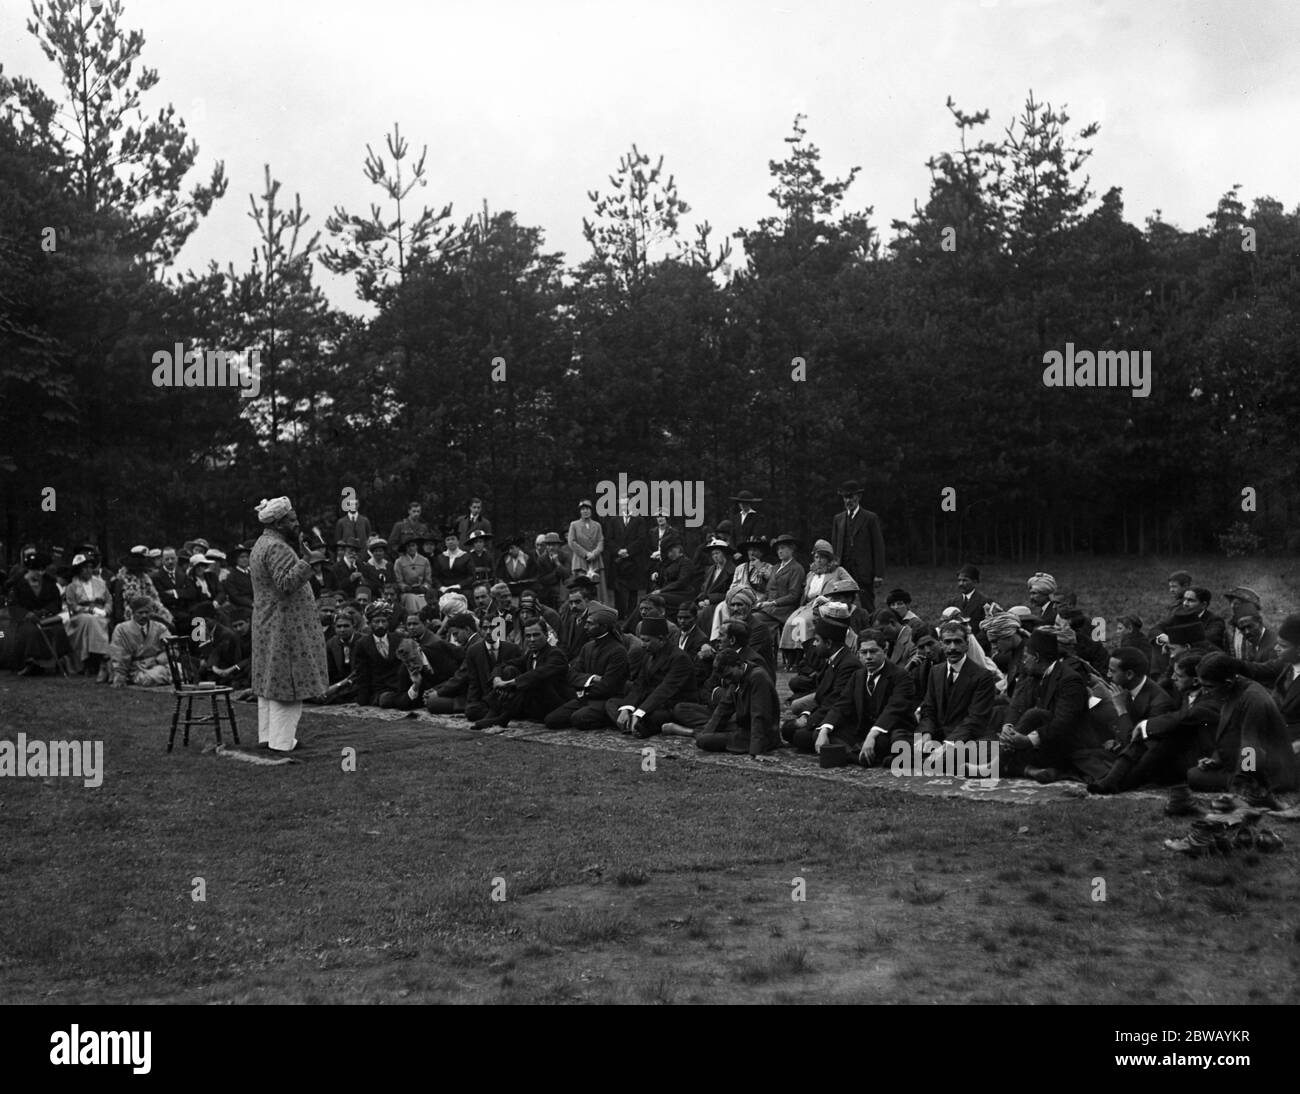 Adoratori alla Festa del sacrificio alla Moschea di Woking , Surrey . 8 ottobre 1916 la moschea Shah Jahan fu la prima moschea costruita appositamente in Europa al di fuori della Spagna musulmana Foto Stock